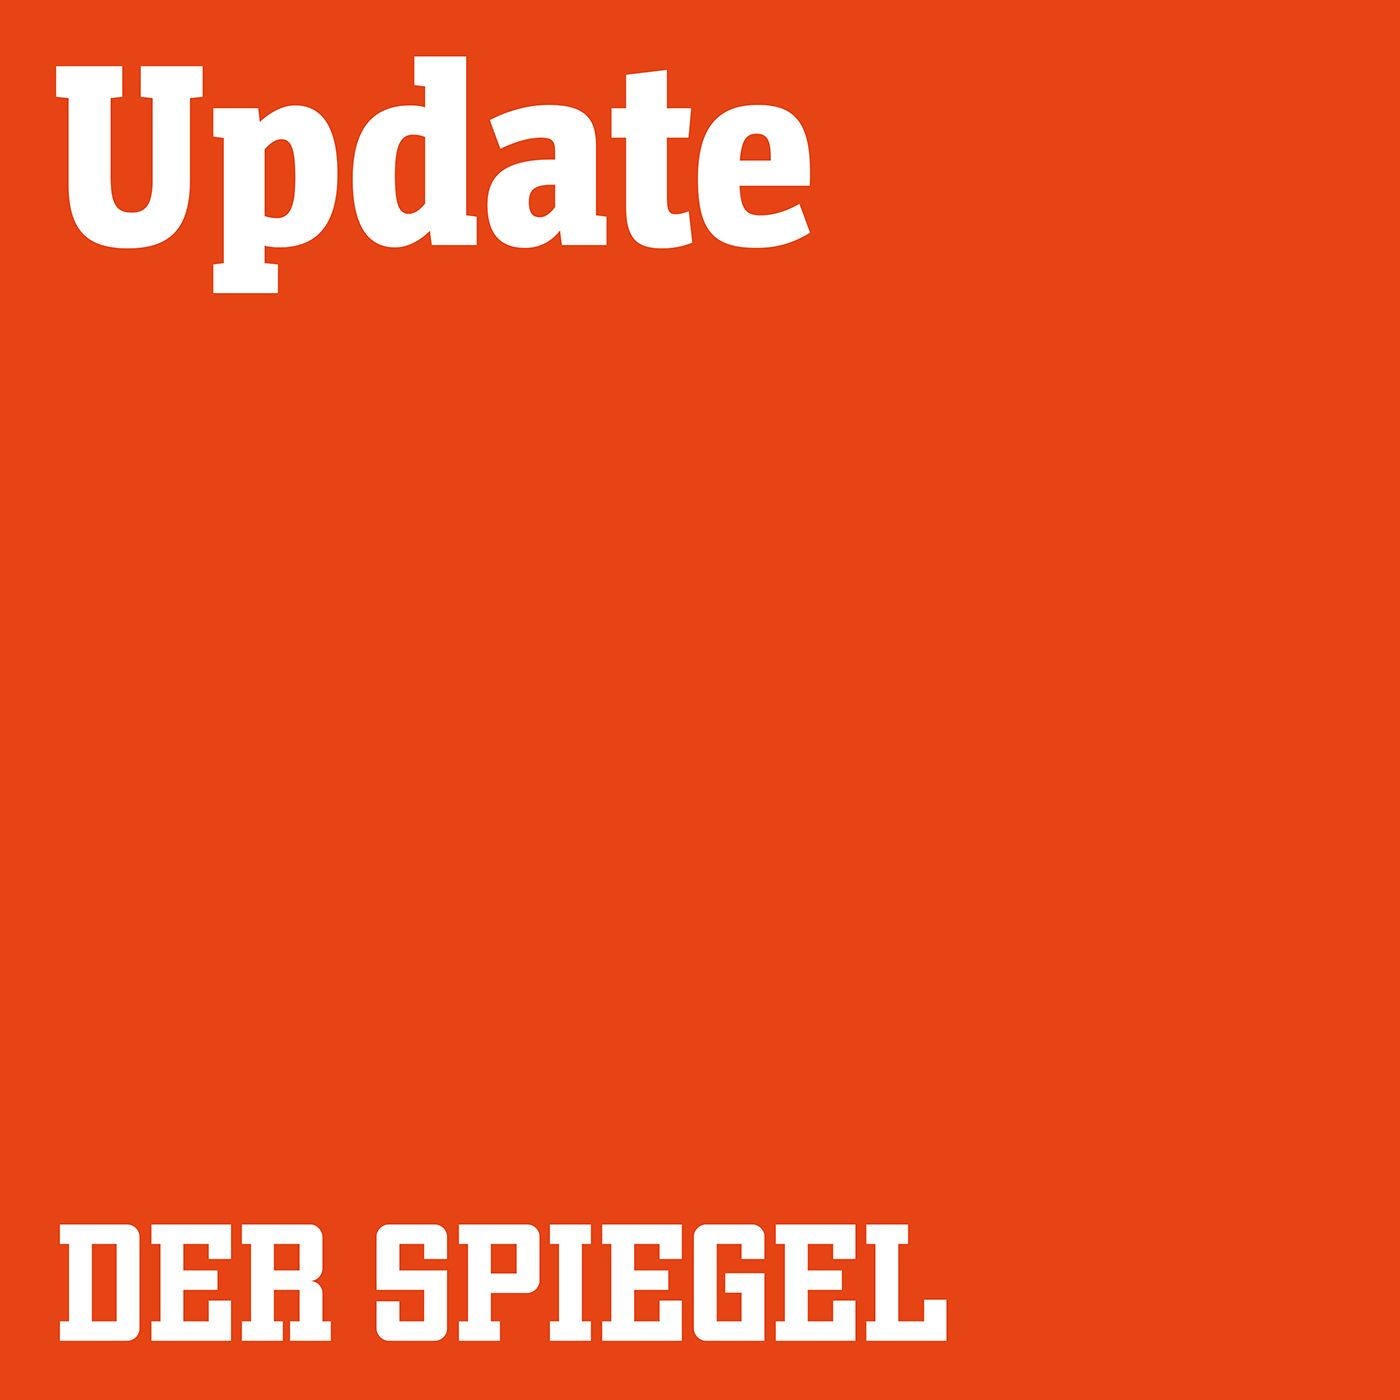 28.08. am Abend: Corona-Demo in Berlin doch erlaubt, Merkel vor der Presse, Sanktionen gegen Belarus